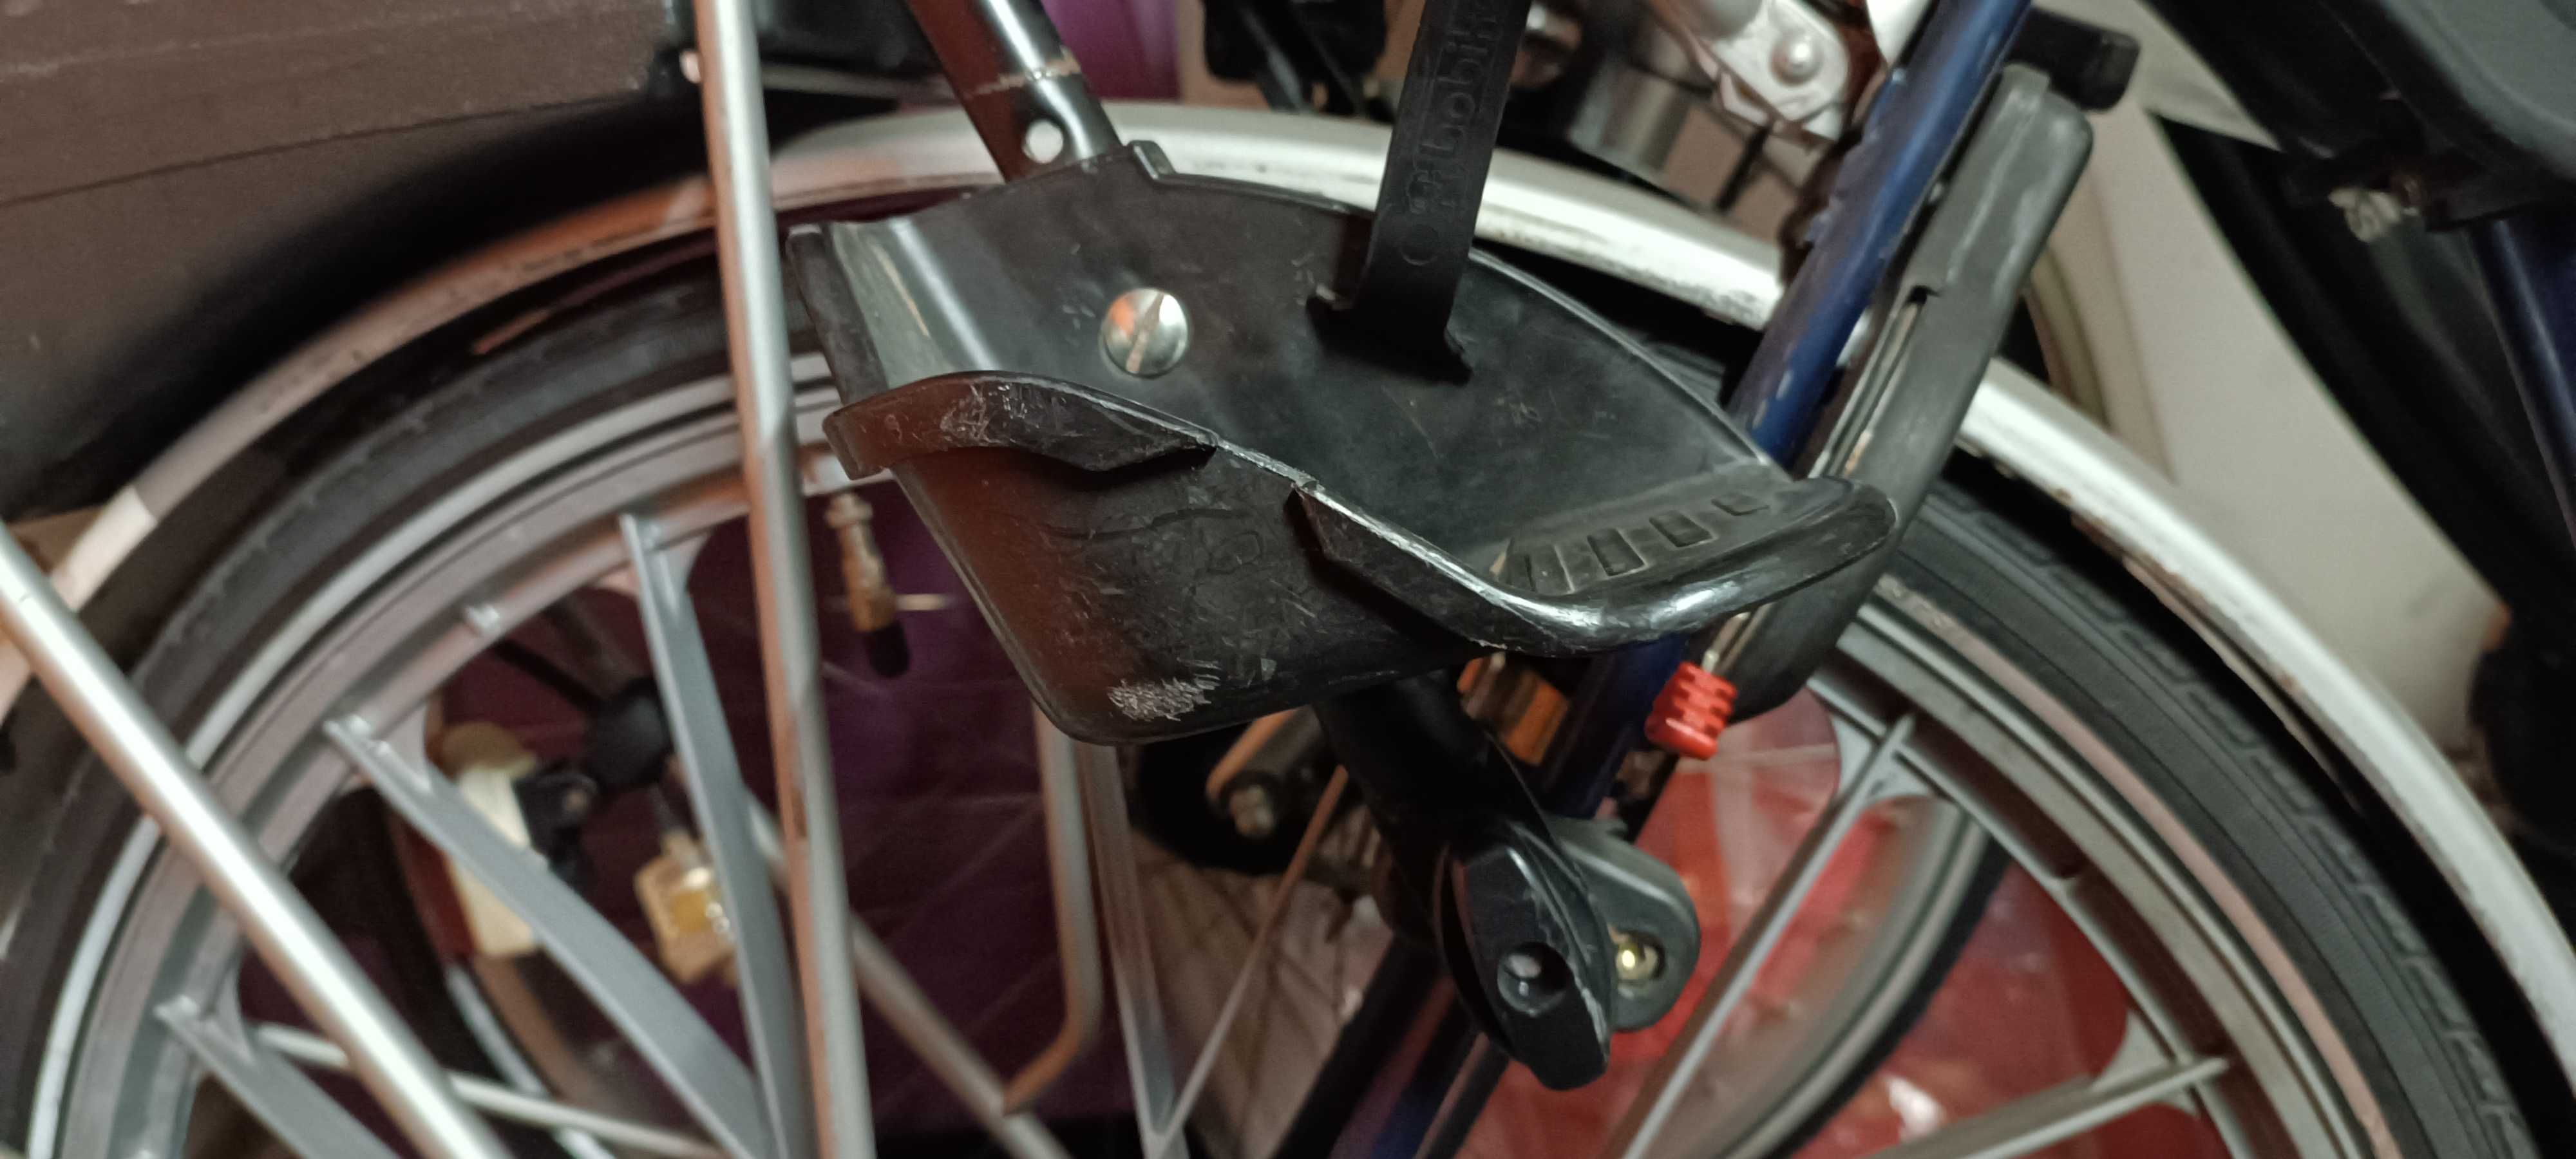 Bobike fotelik rowerowy Junior do 22 kg max mocny bezpieczny jak nowy